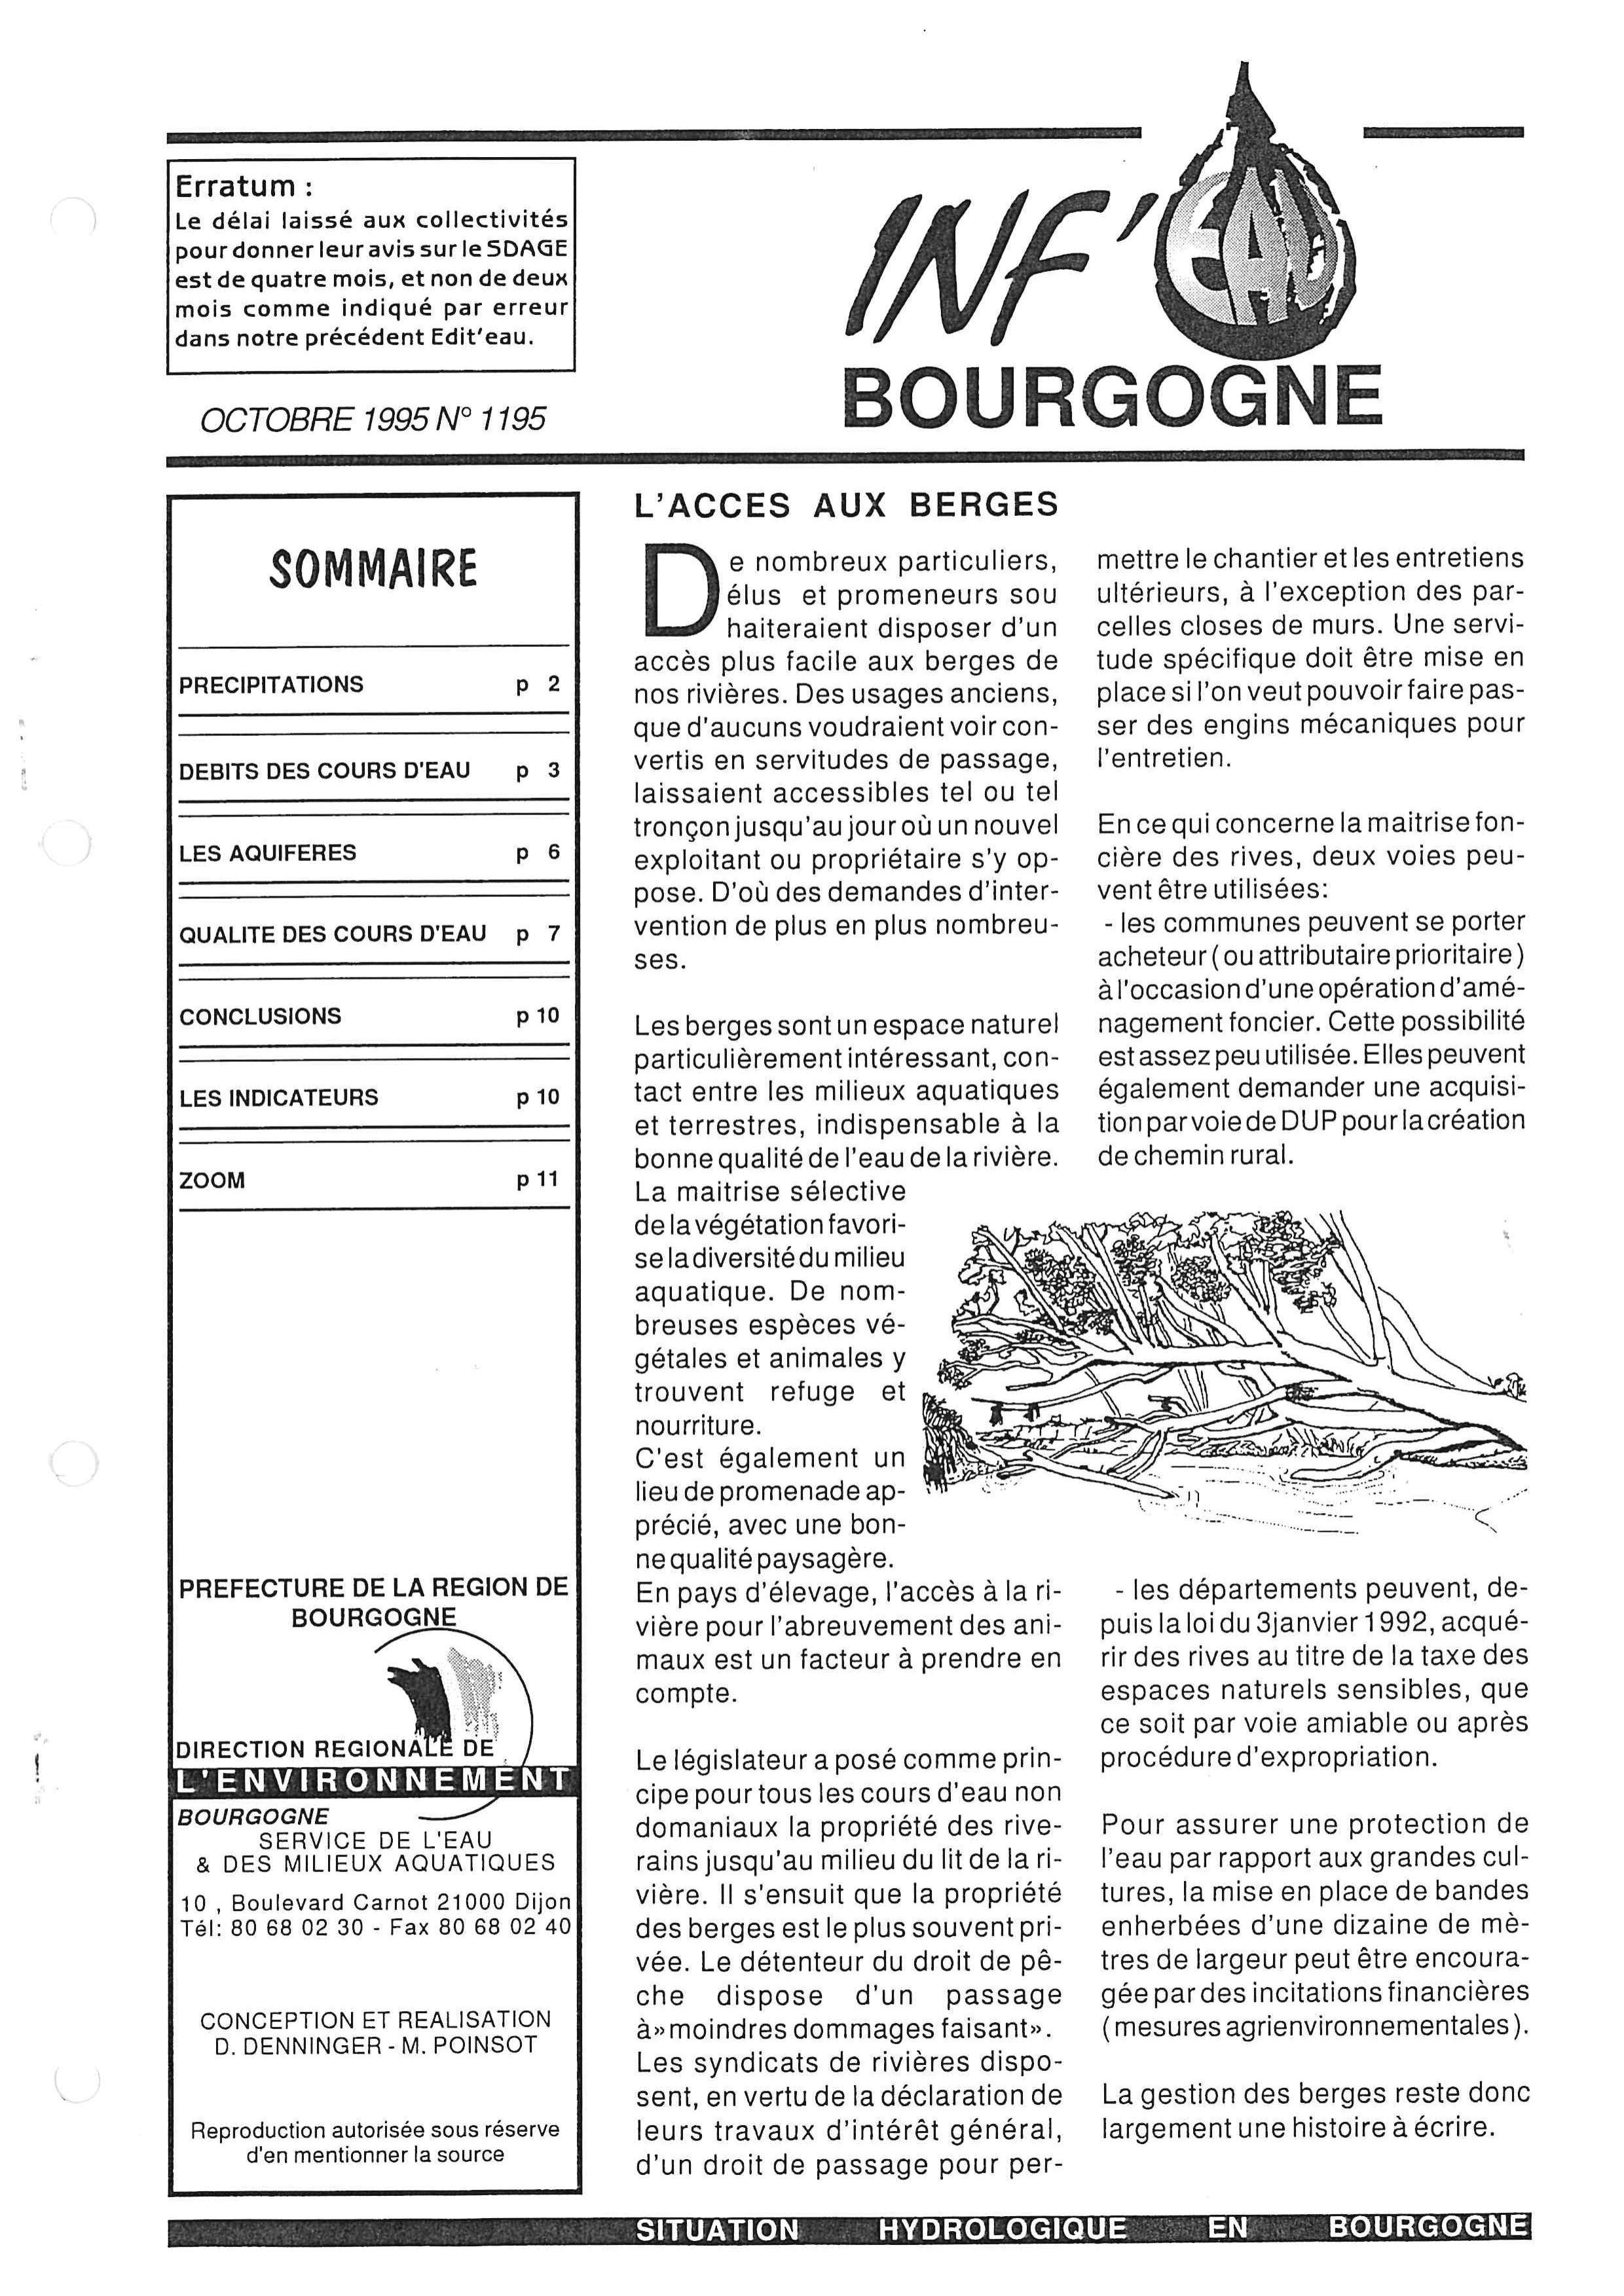 Bulletin hydrologique du mois d'octobre 1995